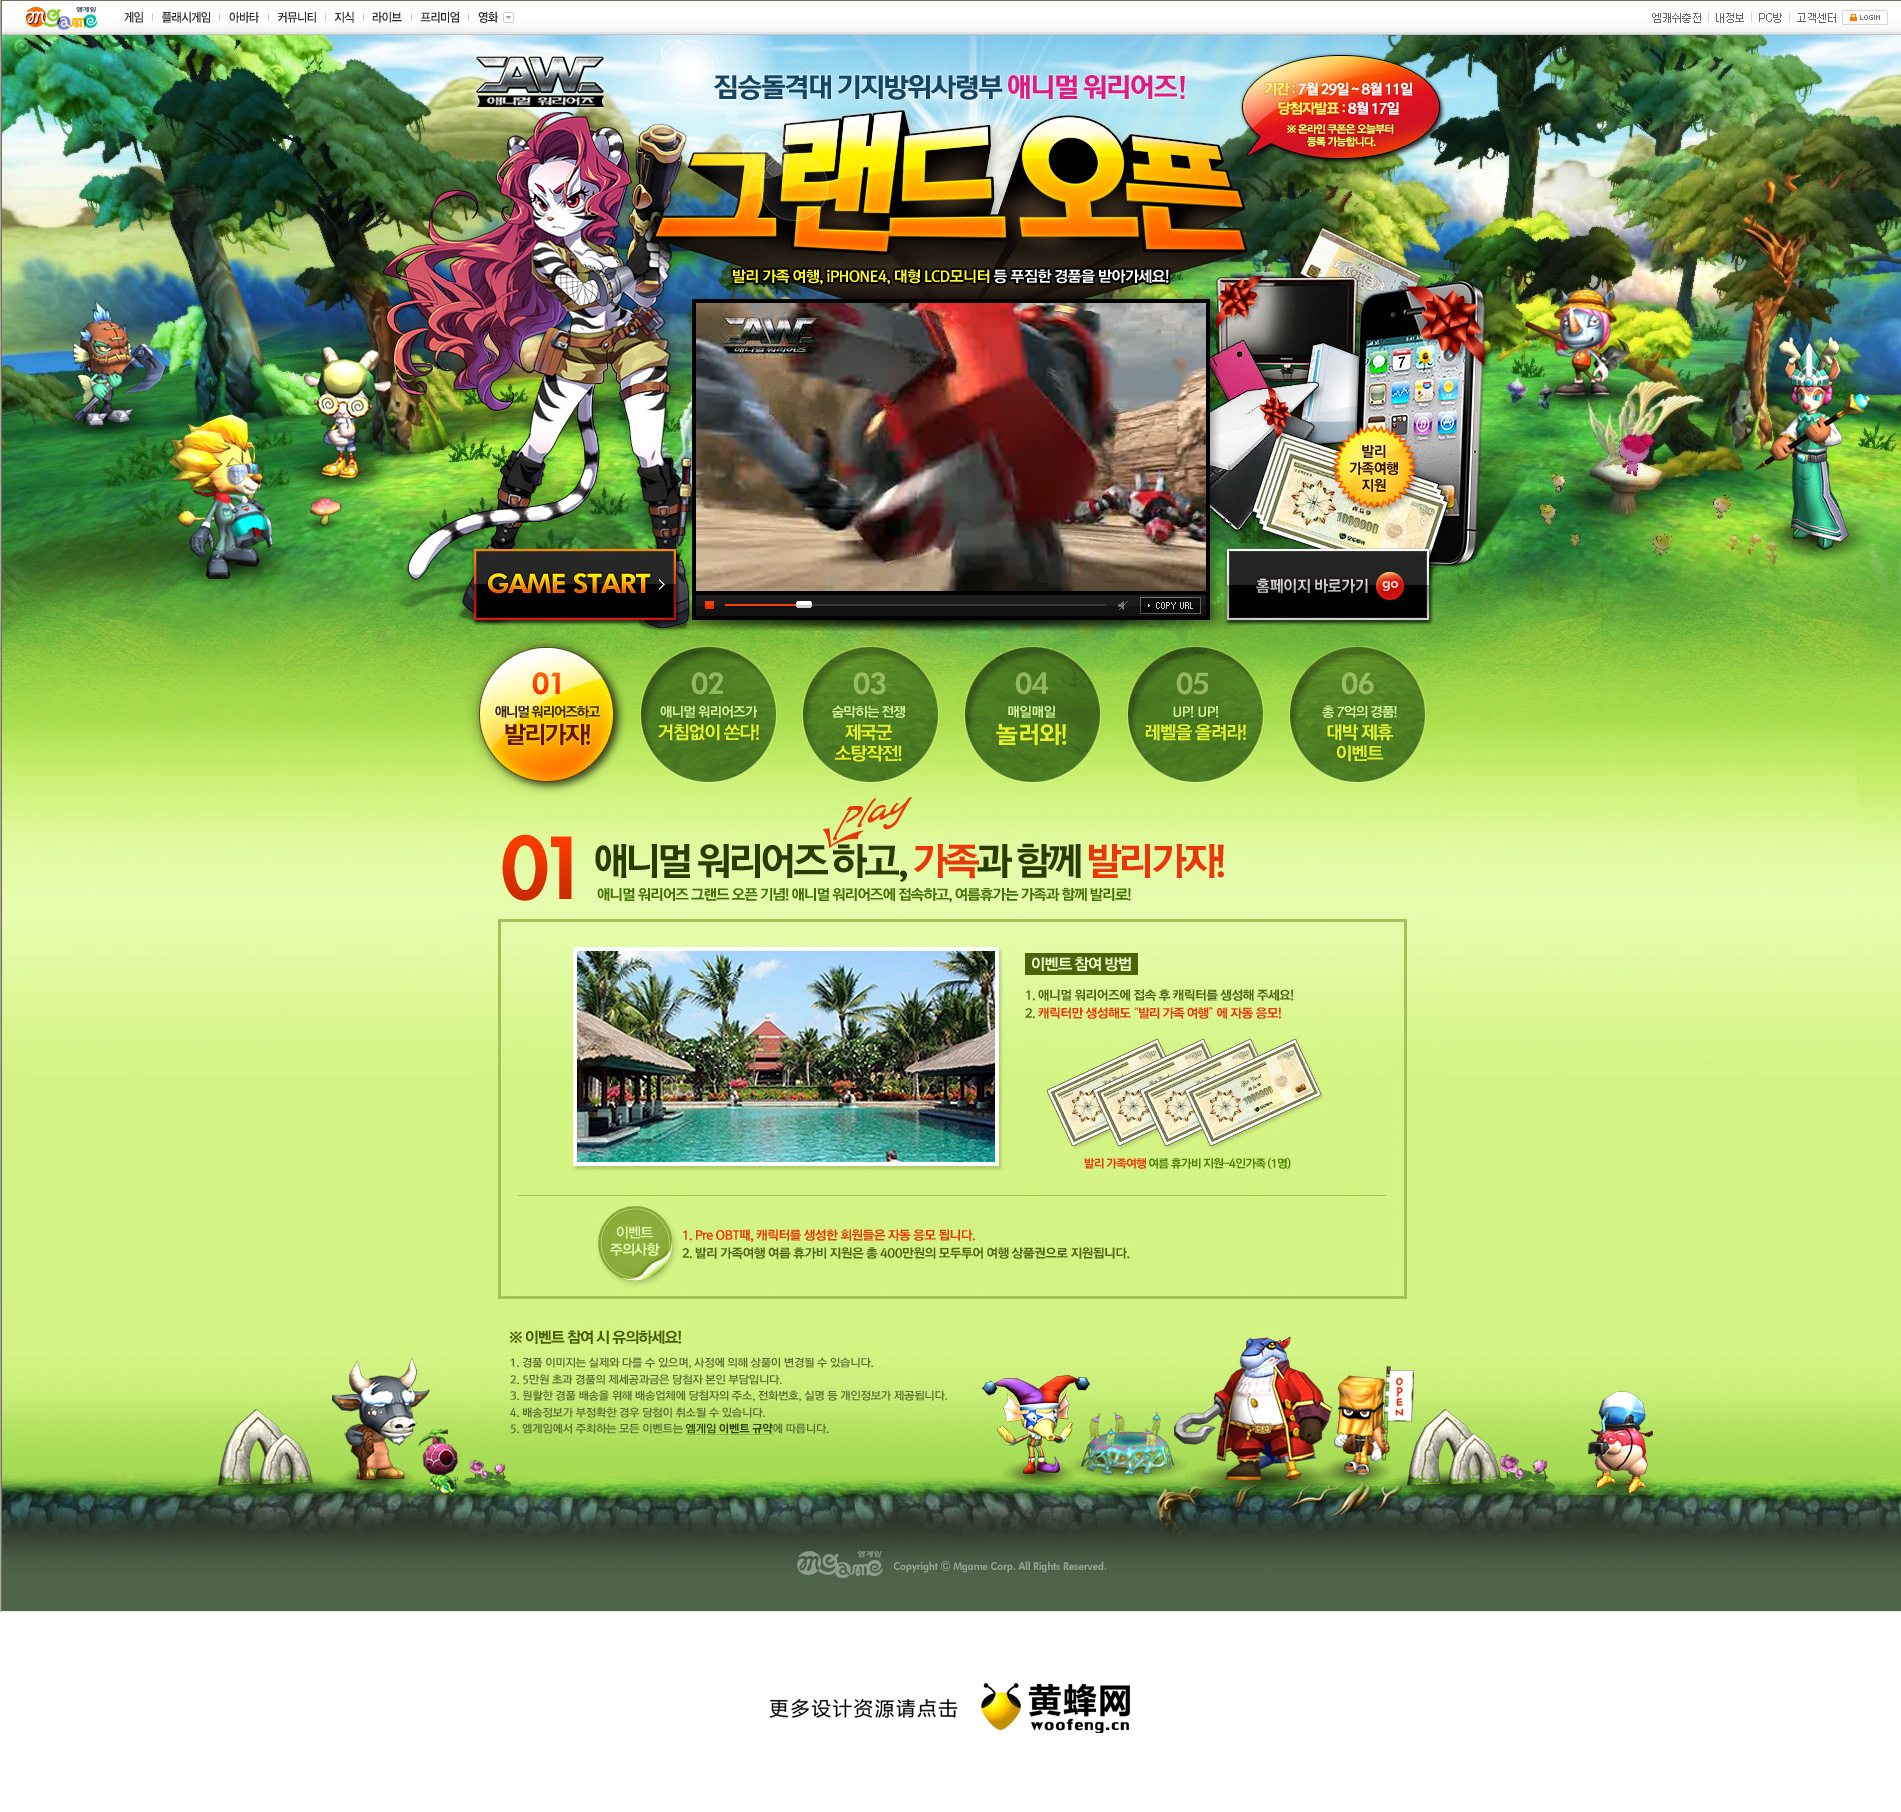 韩国游戏网站活动专题网站设计欣赏，来源自黄蜂网https://woofeng.cn